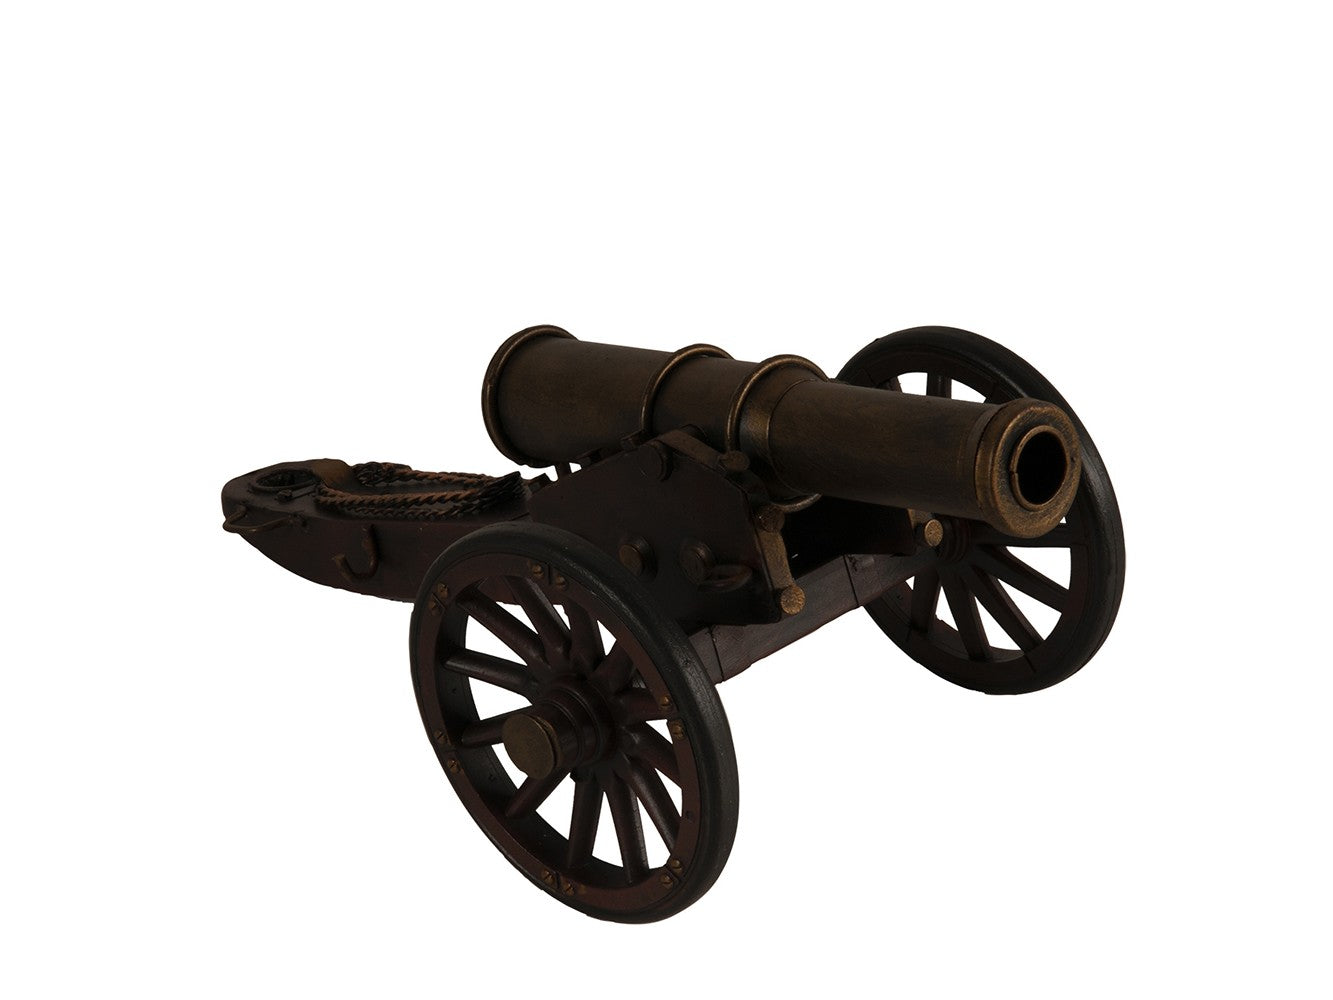 American Civil War Artillery Sculpture By Homeroots | Sculptures | Modishstore - 4